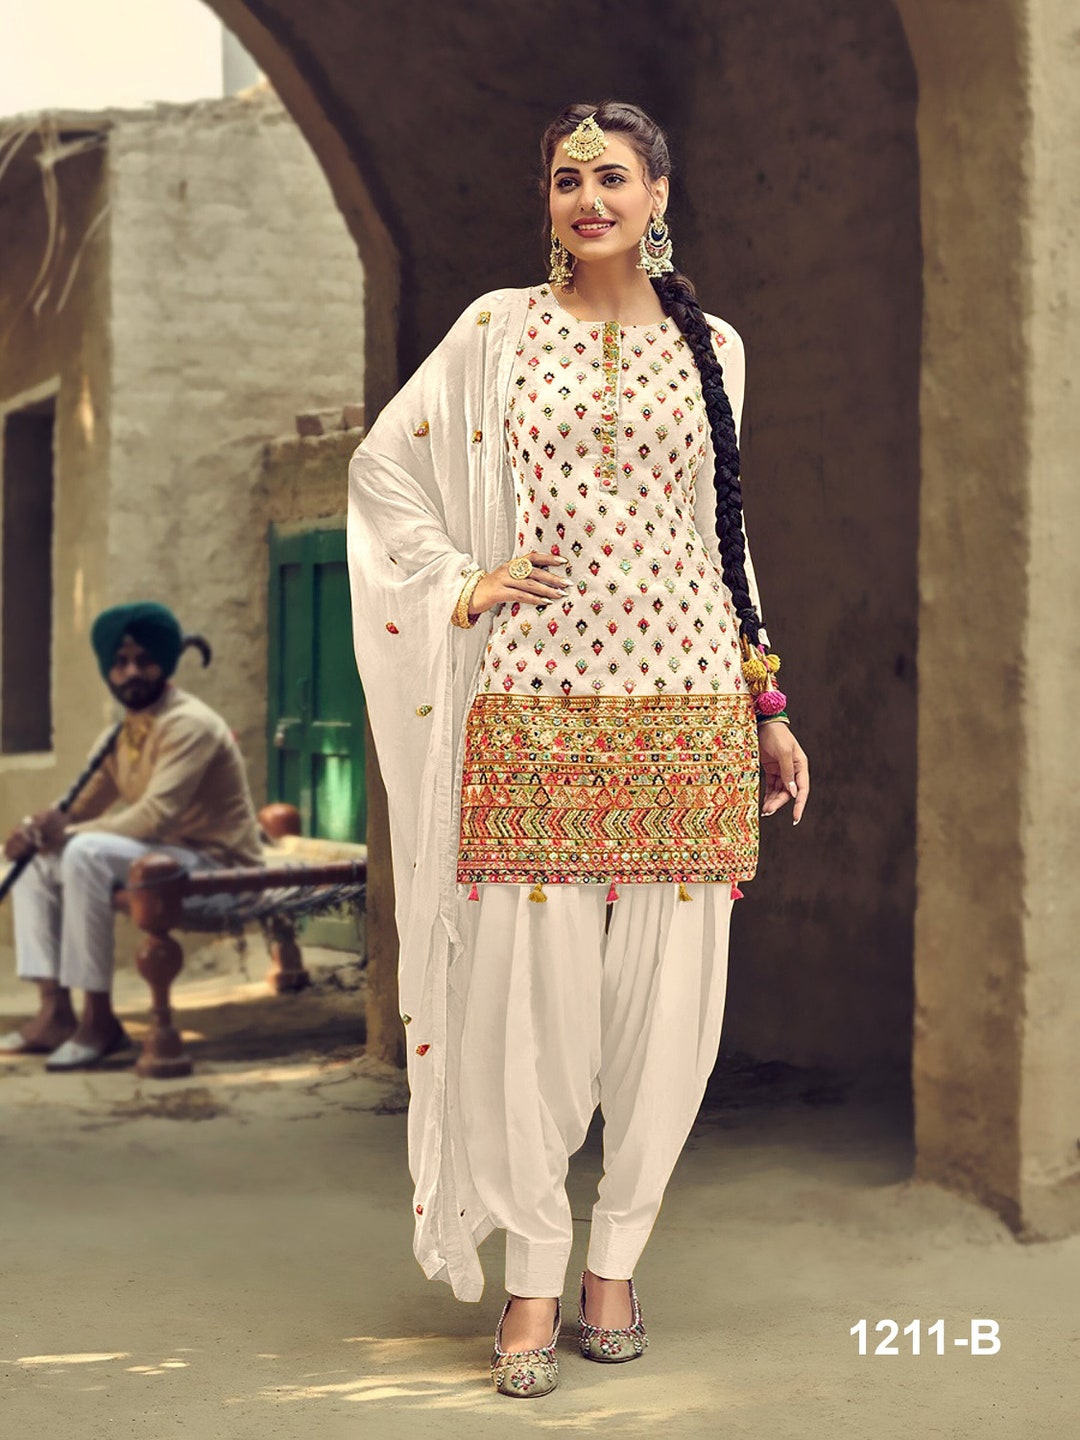 Buy White Punjabi Patiyala Dress Ready to Wear Indian Outfit ...